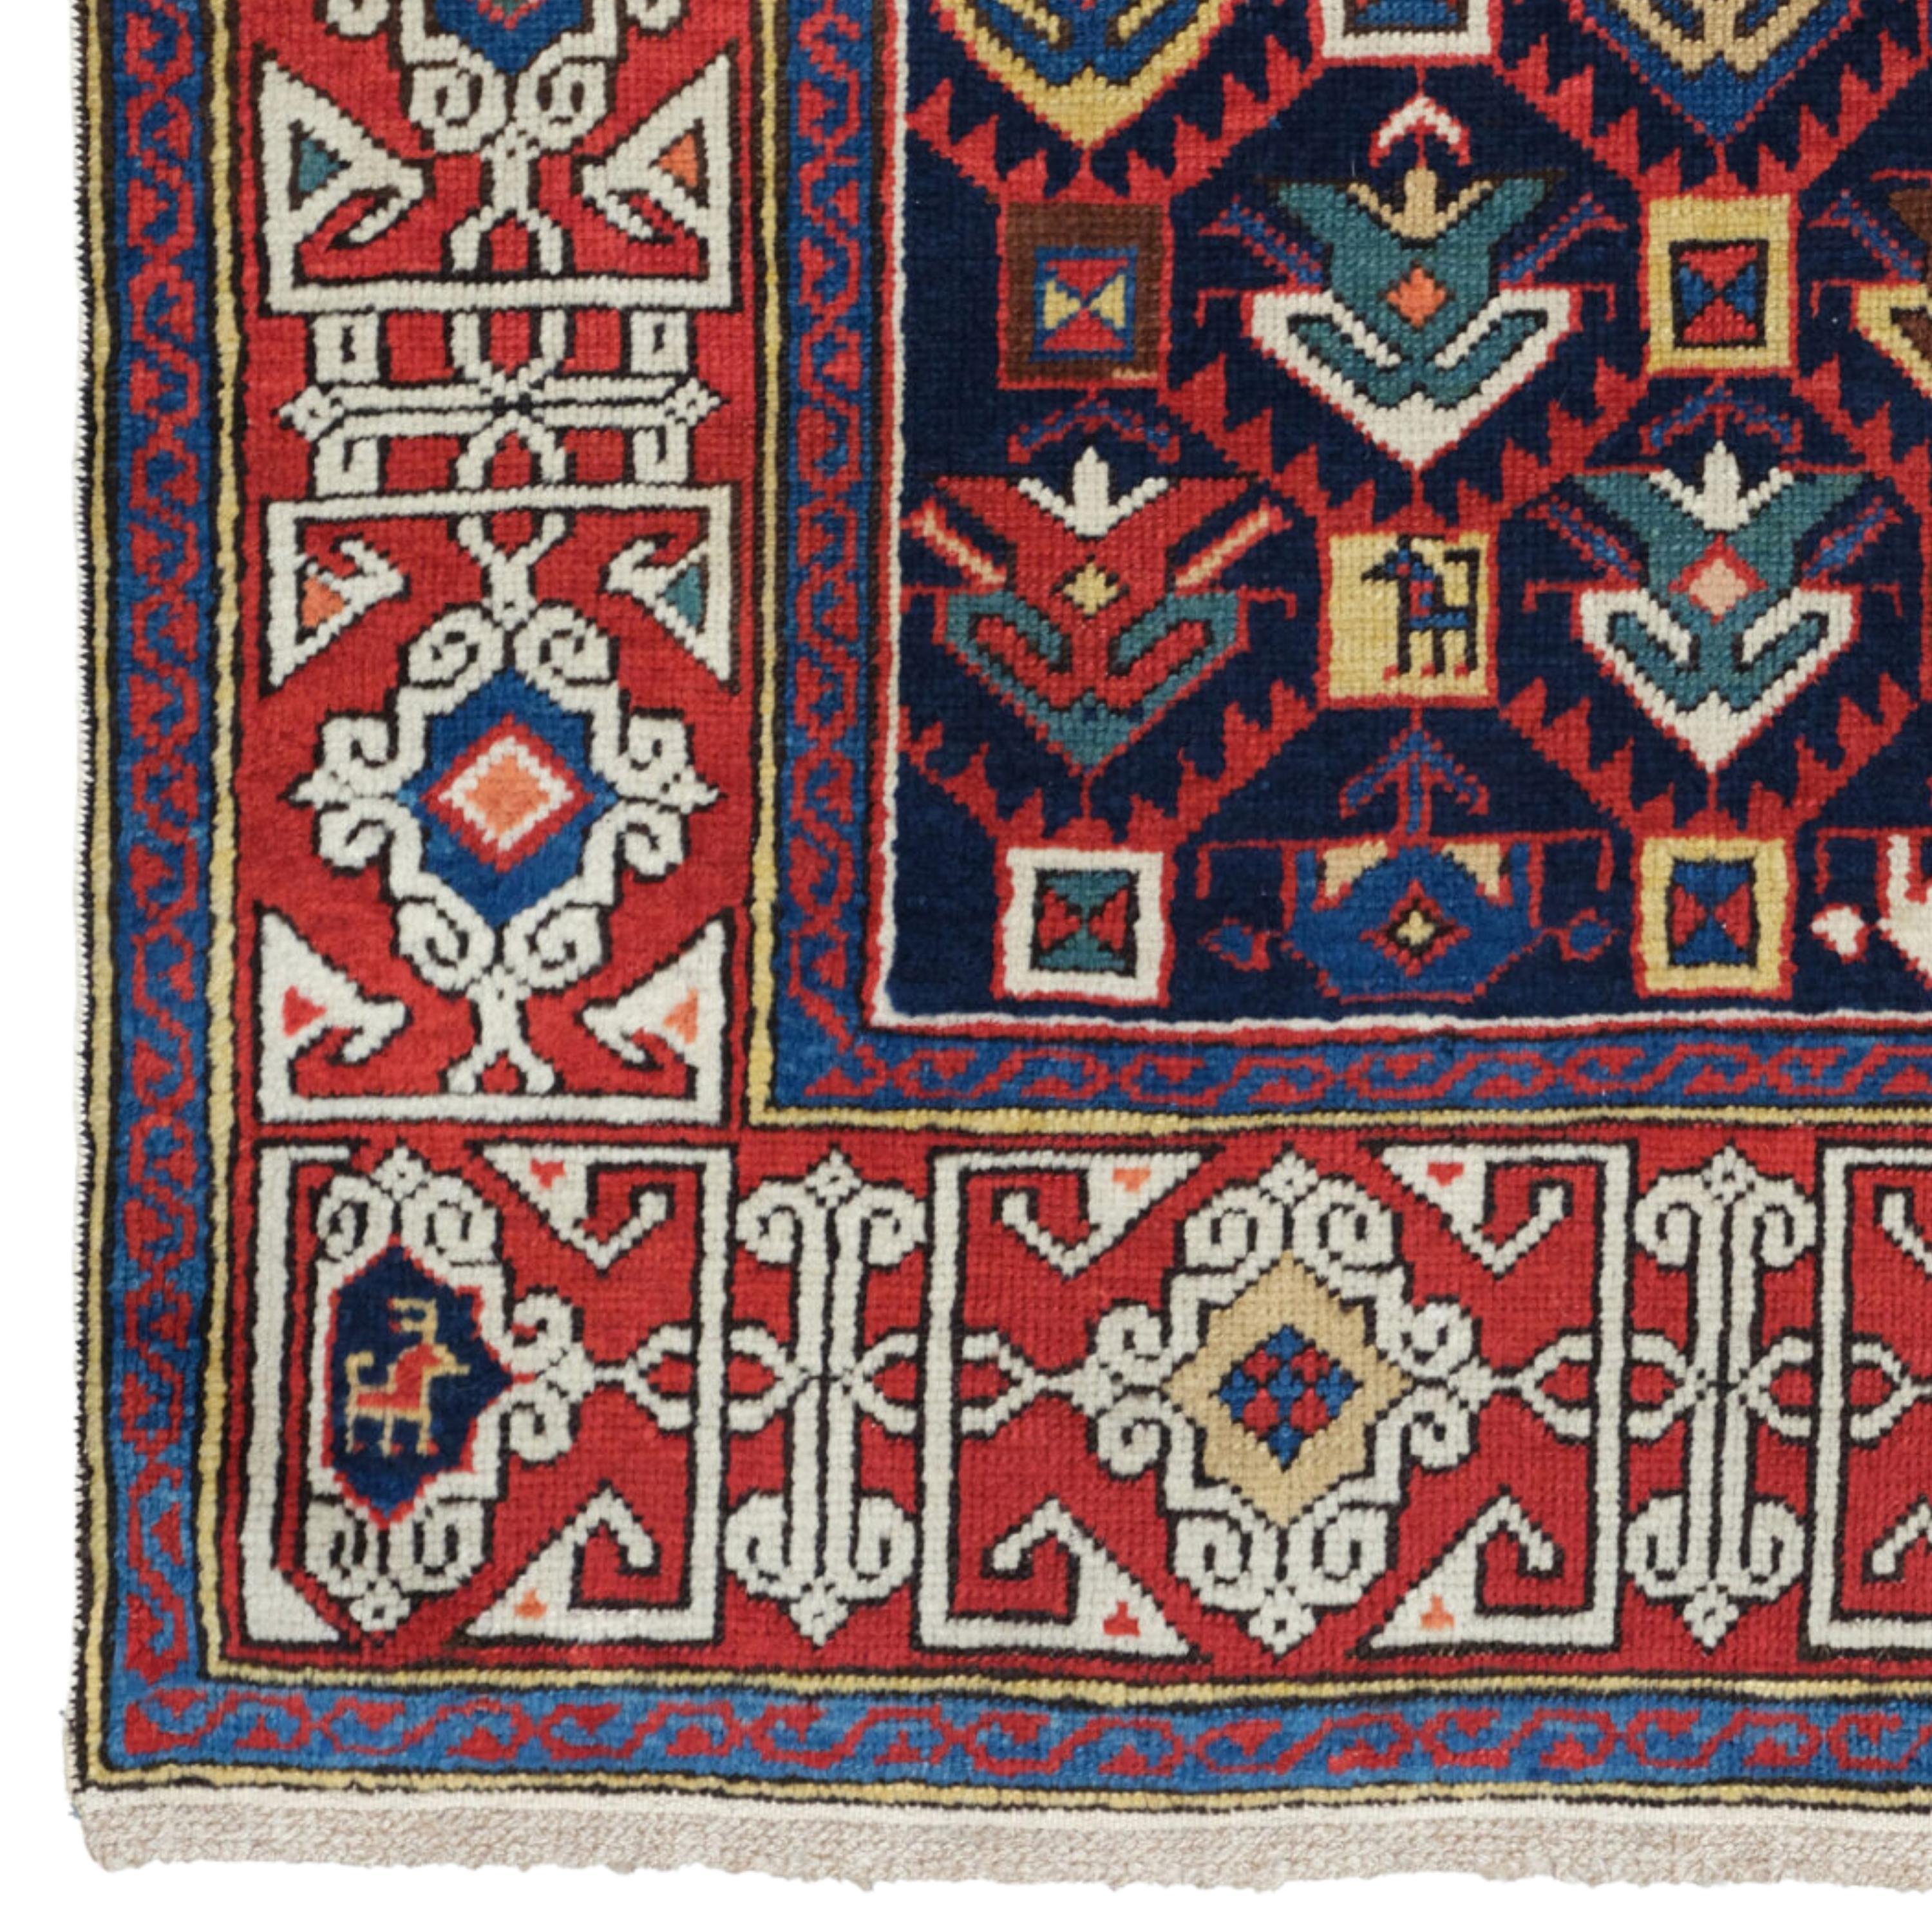 Antiker Schirwan-Teppich
Kaukasischer Schirwan-Teppich aus dem späten 19. Jahrhundert Größe: 91×110 cm (35,8x43,3 In)

Der Schirwan-Teppich ist ein handgefertigter Bodenbelag aus der Region Schirwan in Aserbaidschan im Südostkaukasus.
Die meisten